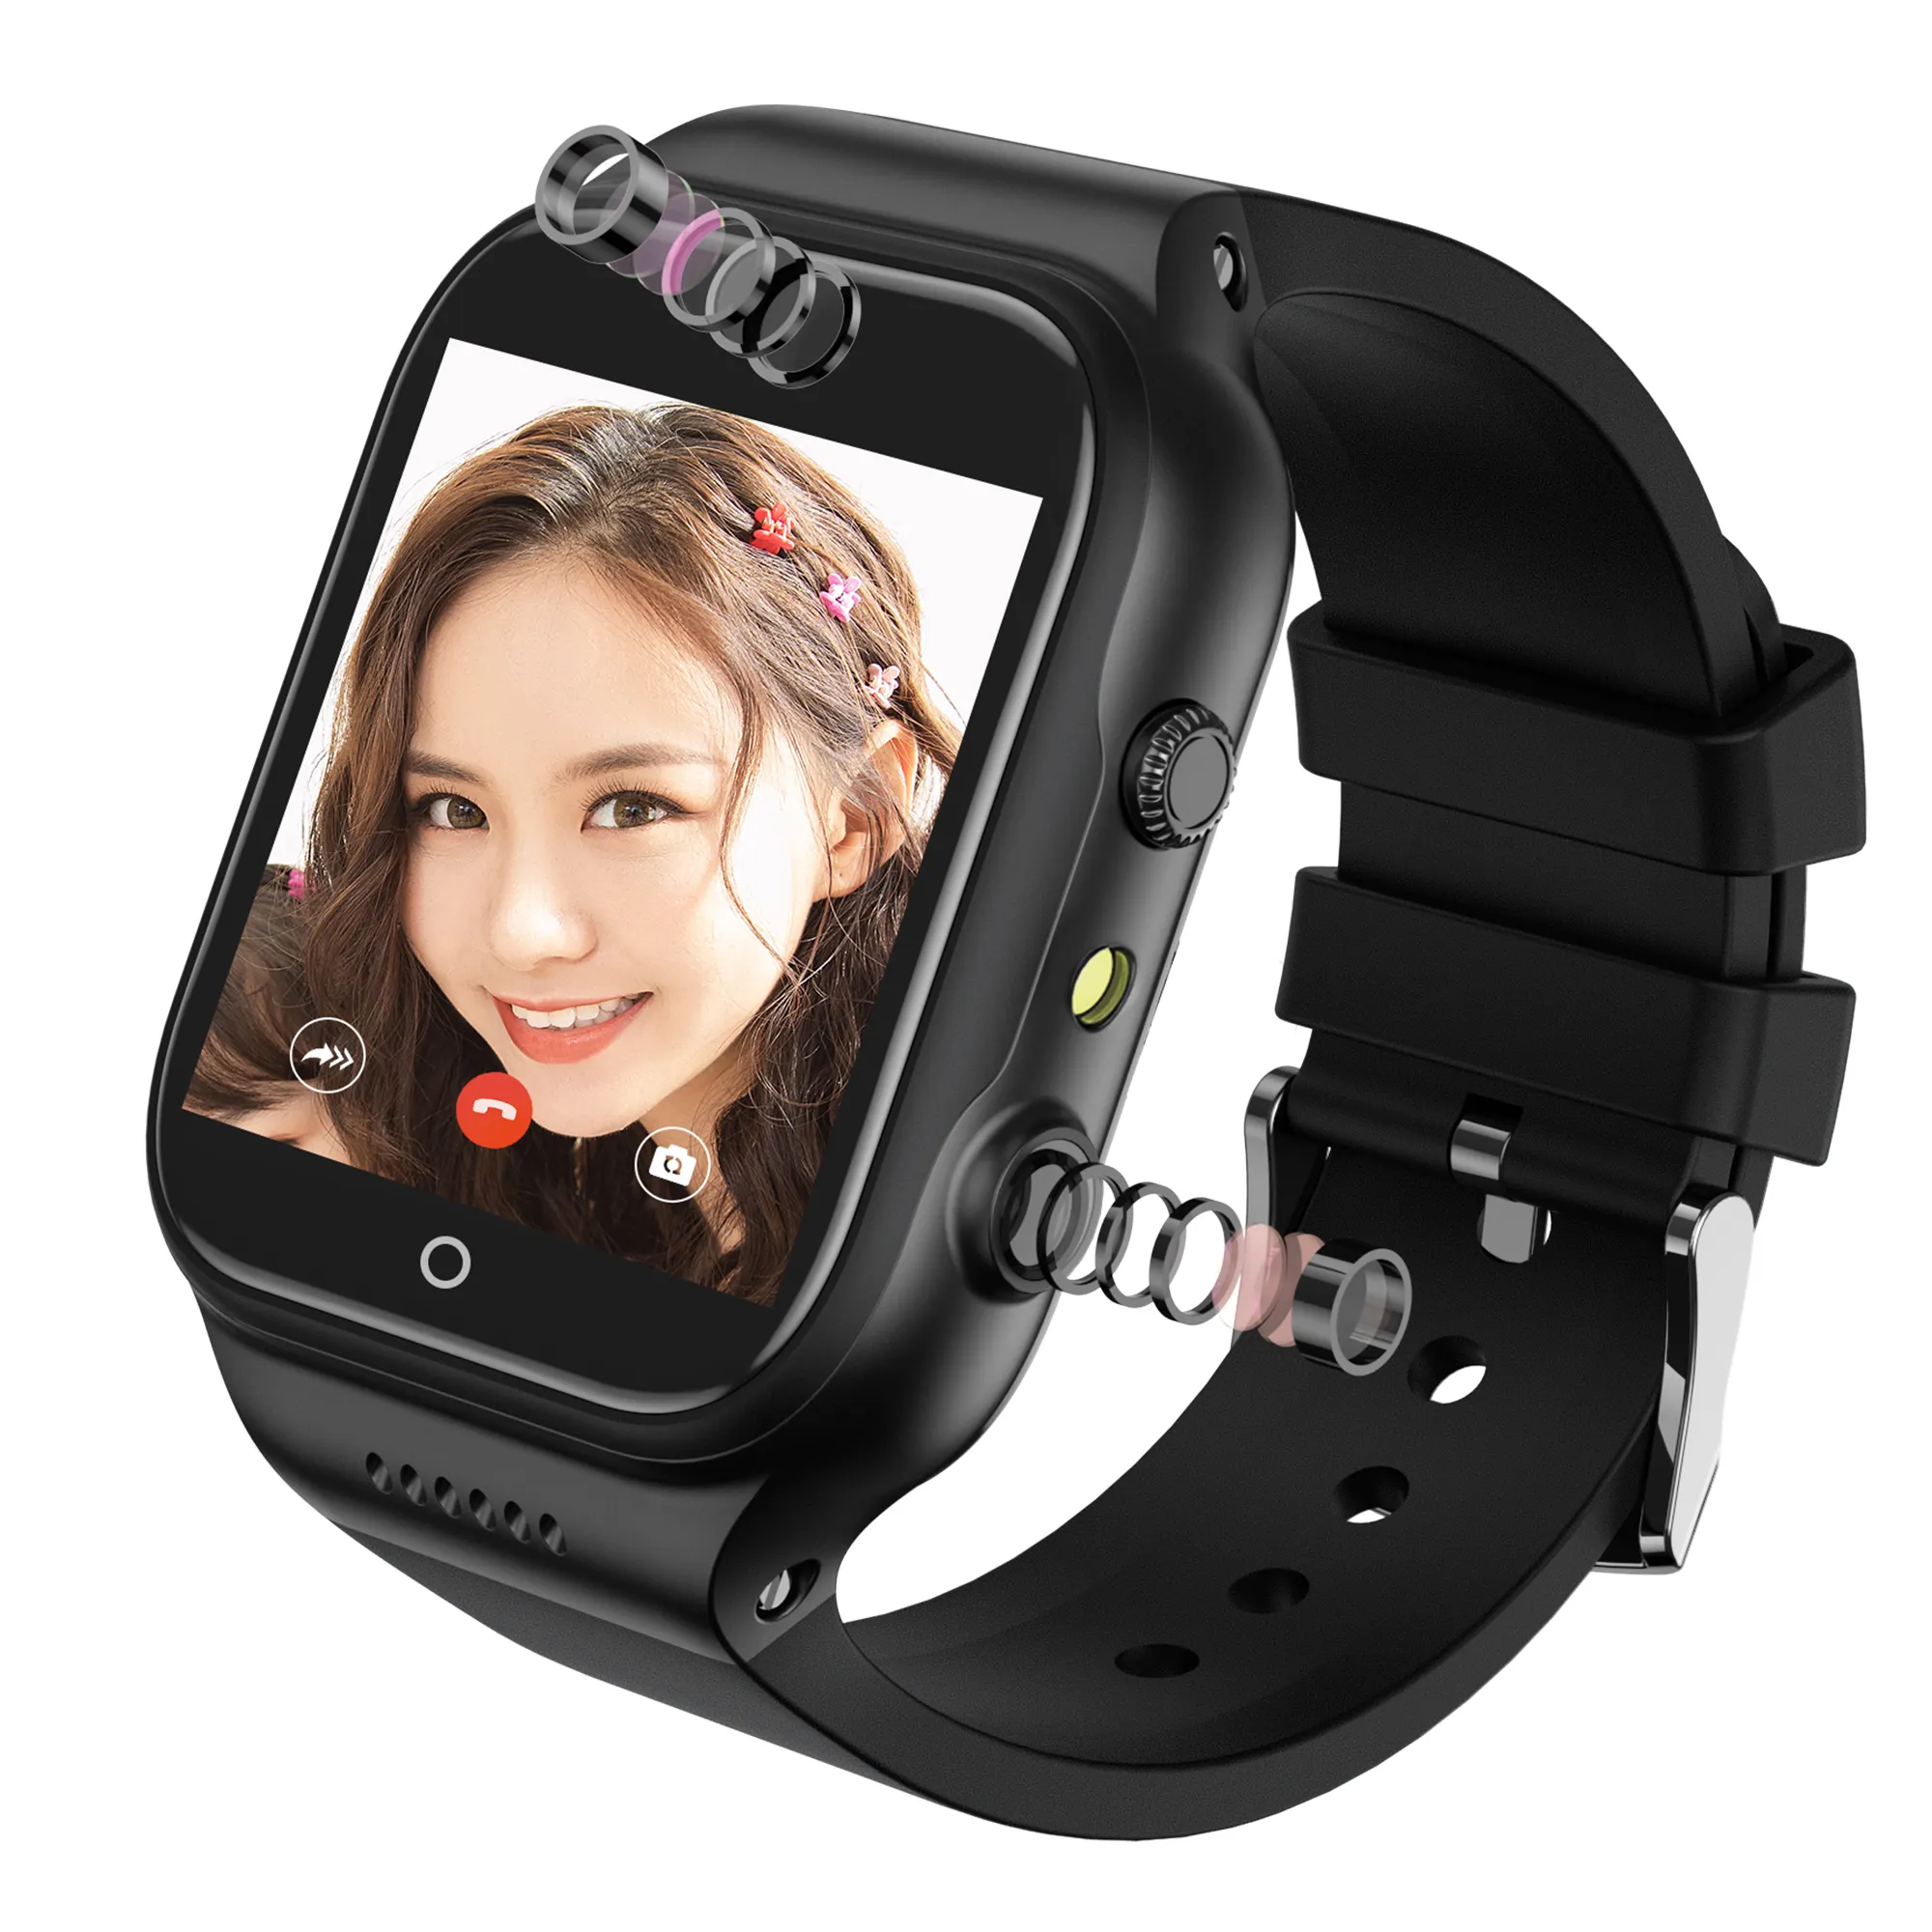 X89 GPS умные часы Full Net 4G звонки пользовательский циферблат двойная камера Поддержка популярного приложения скачать Android Смарт-часы 4G сим-карта